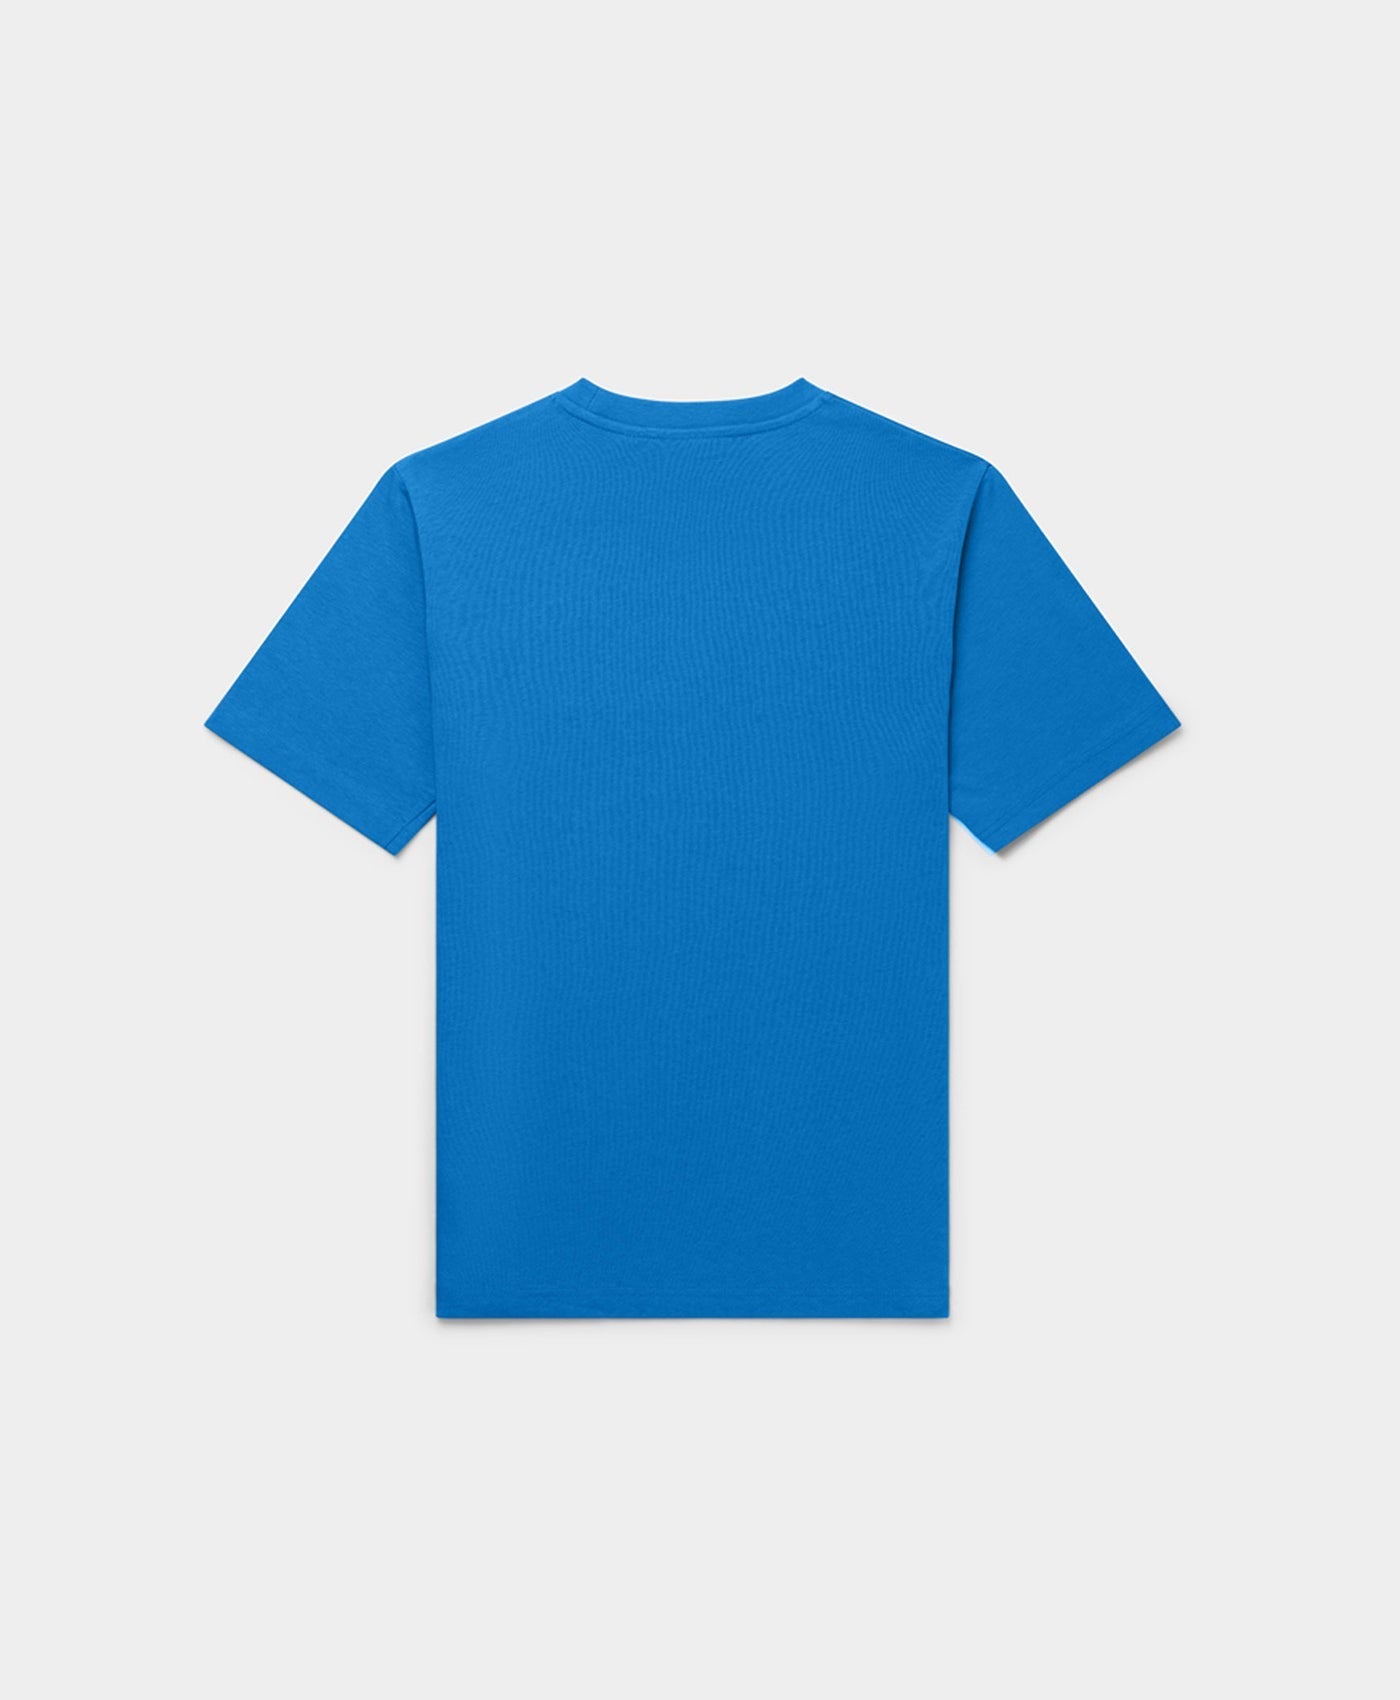 DP - French Blue Alias T-Shirt - Packshot - Rear